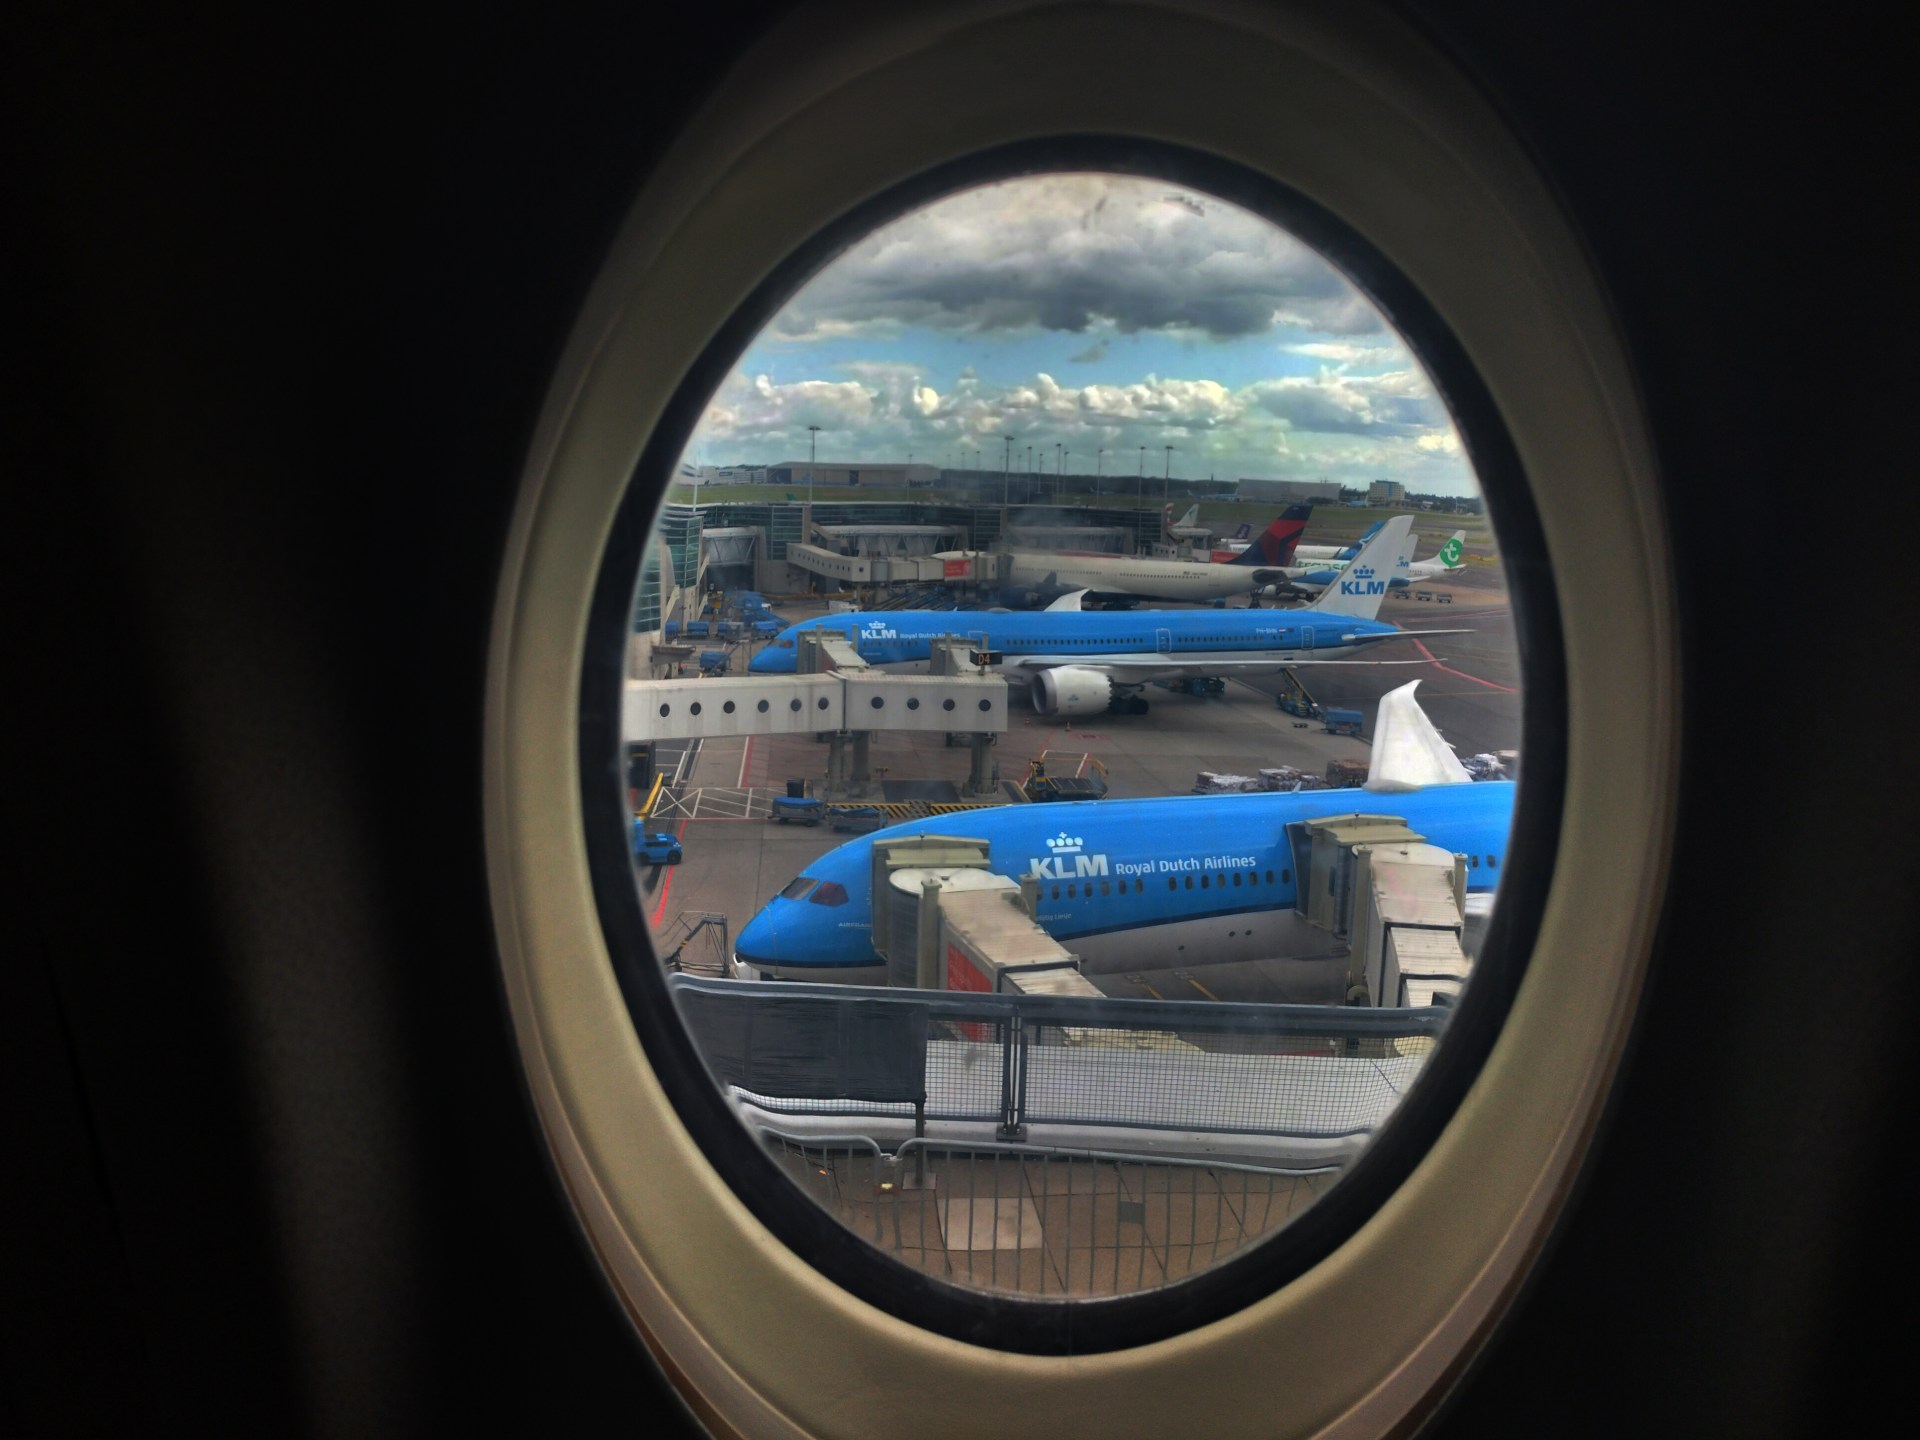 KLM ‘unrest’ journey warning for Kenya, Tanzania sparks anger